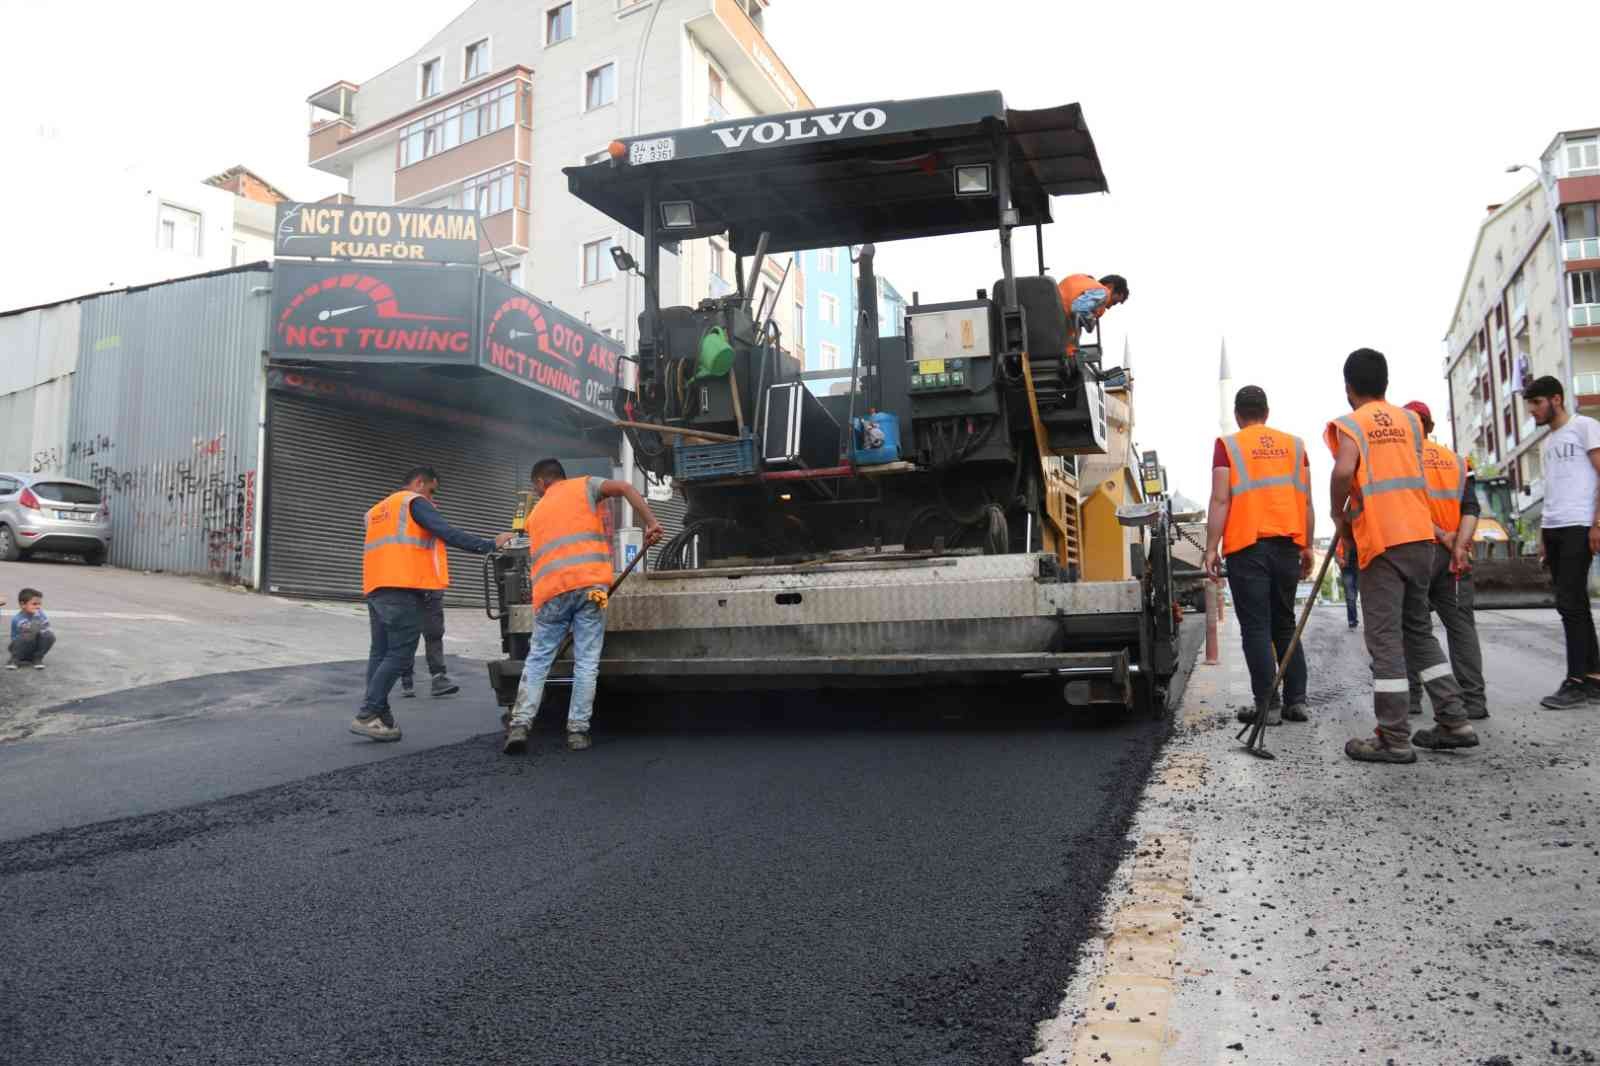 Gebze’ye 140 bin ton asfalt #kocaeli